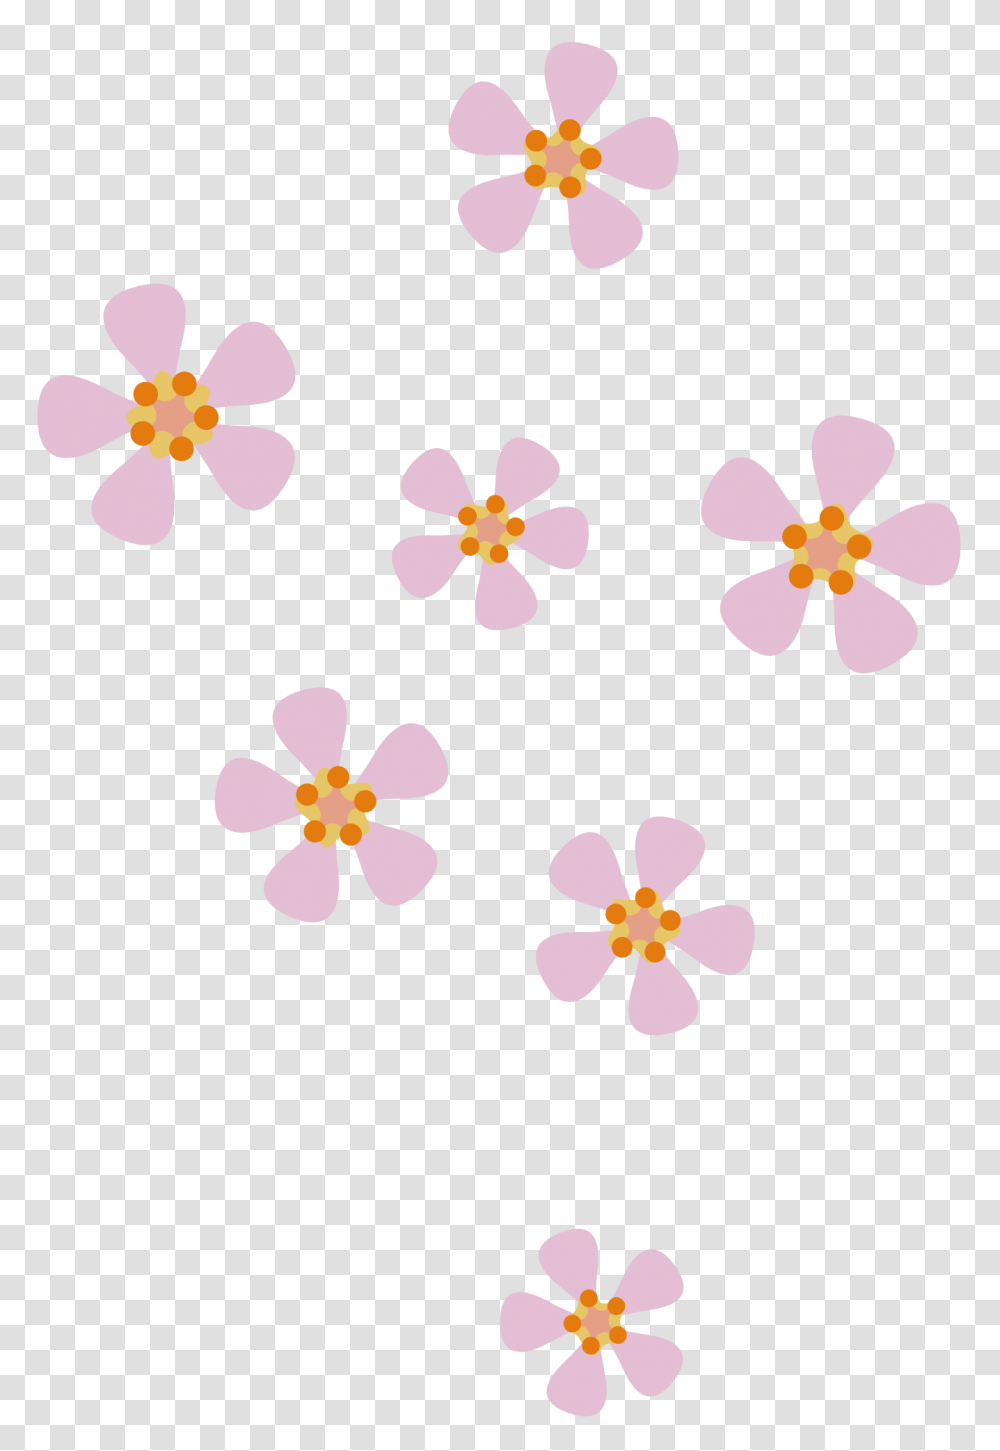 Peach Flower Clipart, Plant, Blossom, Petal, Floral Design Transparent Png